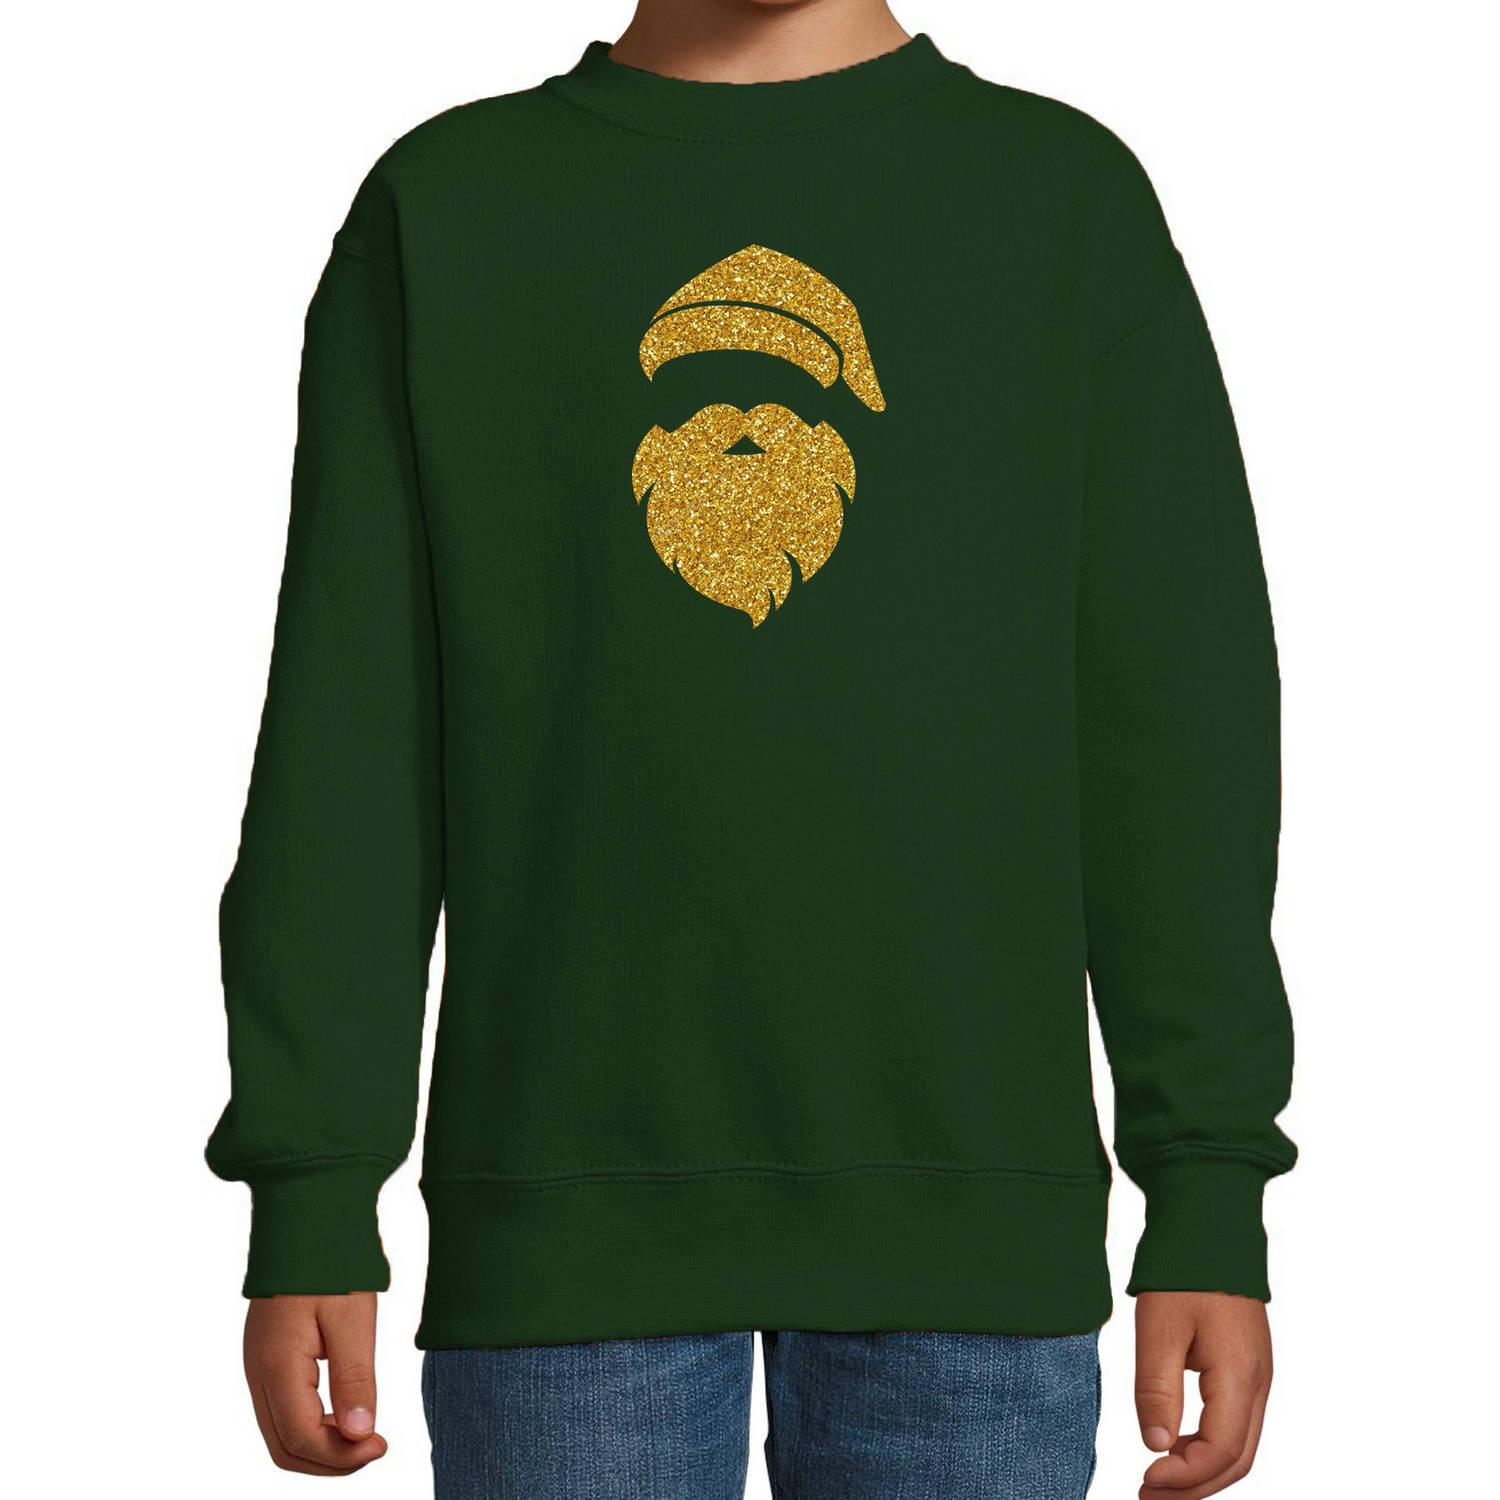 Kerstman hoofd Kerstsweater / Kersttrui groen voor kinderen met gouden glitter bedrukking 3-4 jaar (98/104) - kerst trui